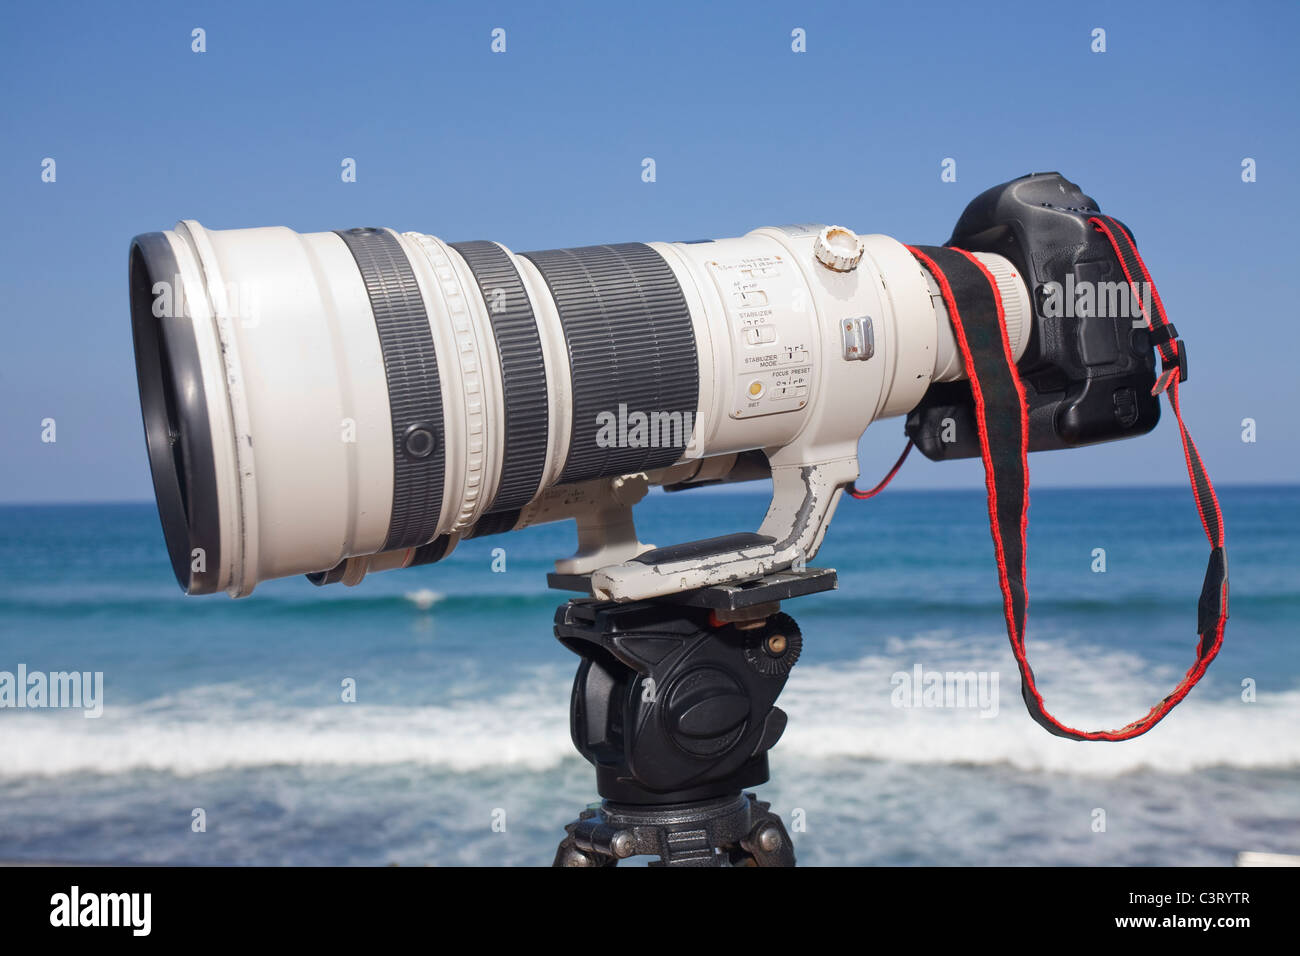 Großer Zoom-Objektiv DSLR-Kamera und Stativ bei einem Surf-Wettbewerb  Stockfotografie - Alamy